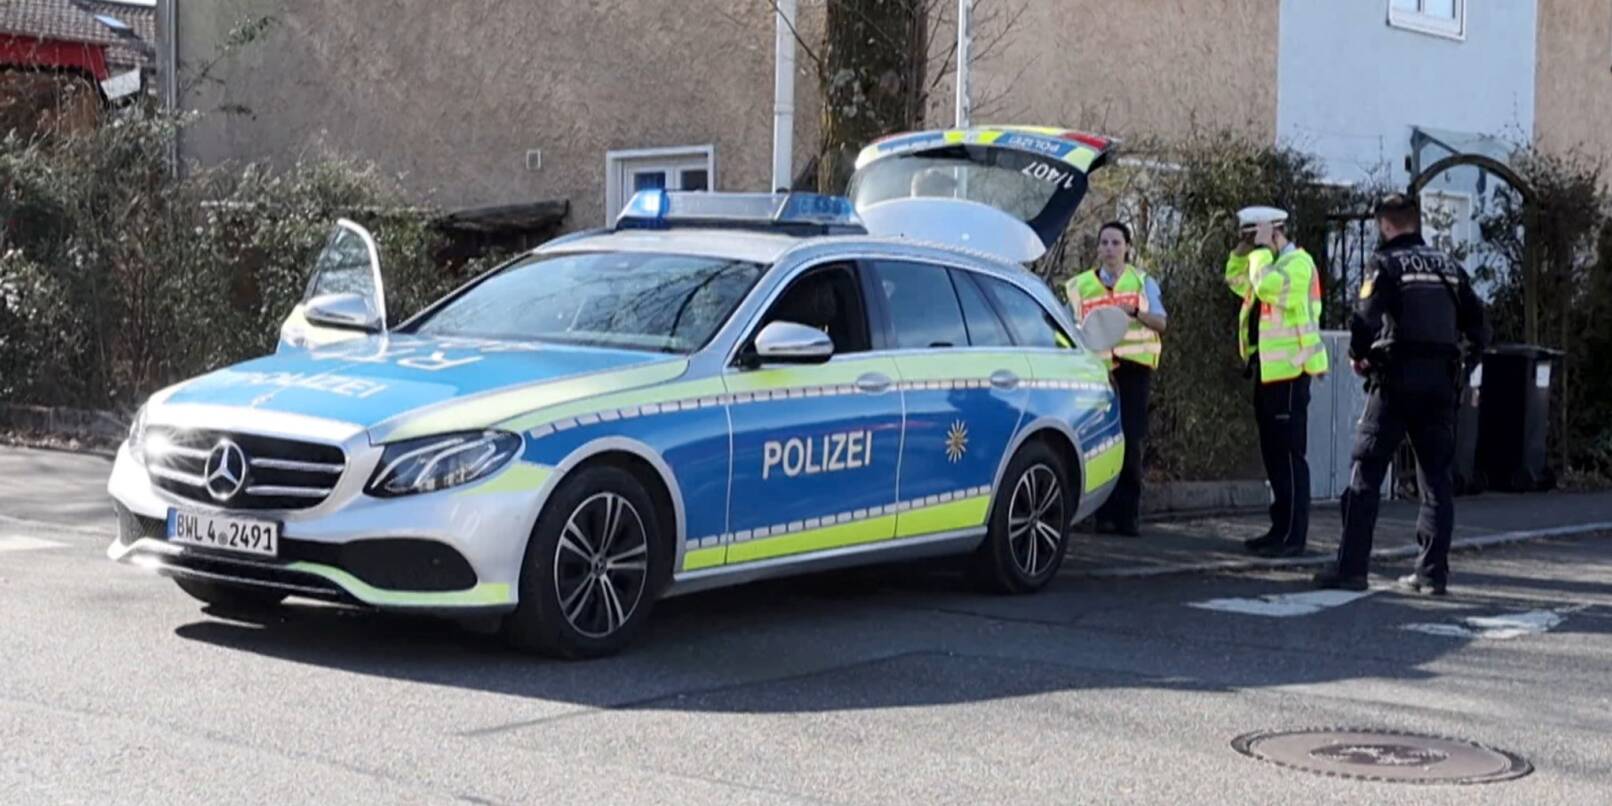 Einsatzkräfte der Polizei stehen an Einsatzfahrzeugen in Reutlingen.